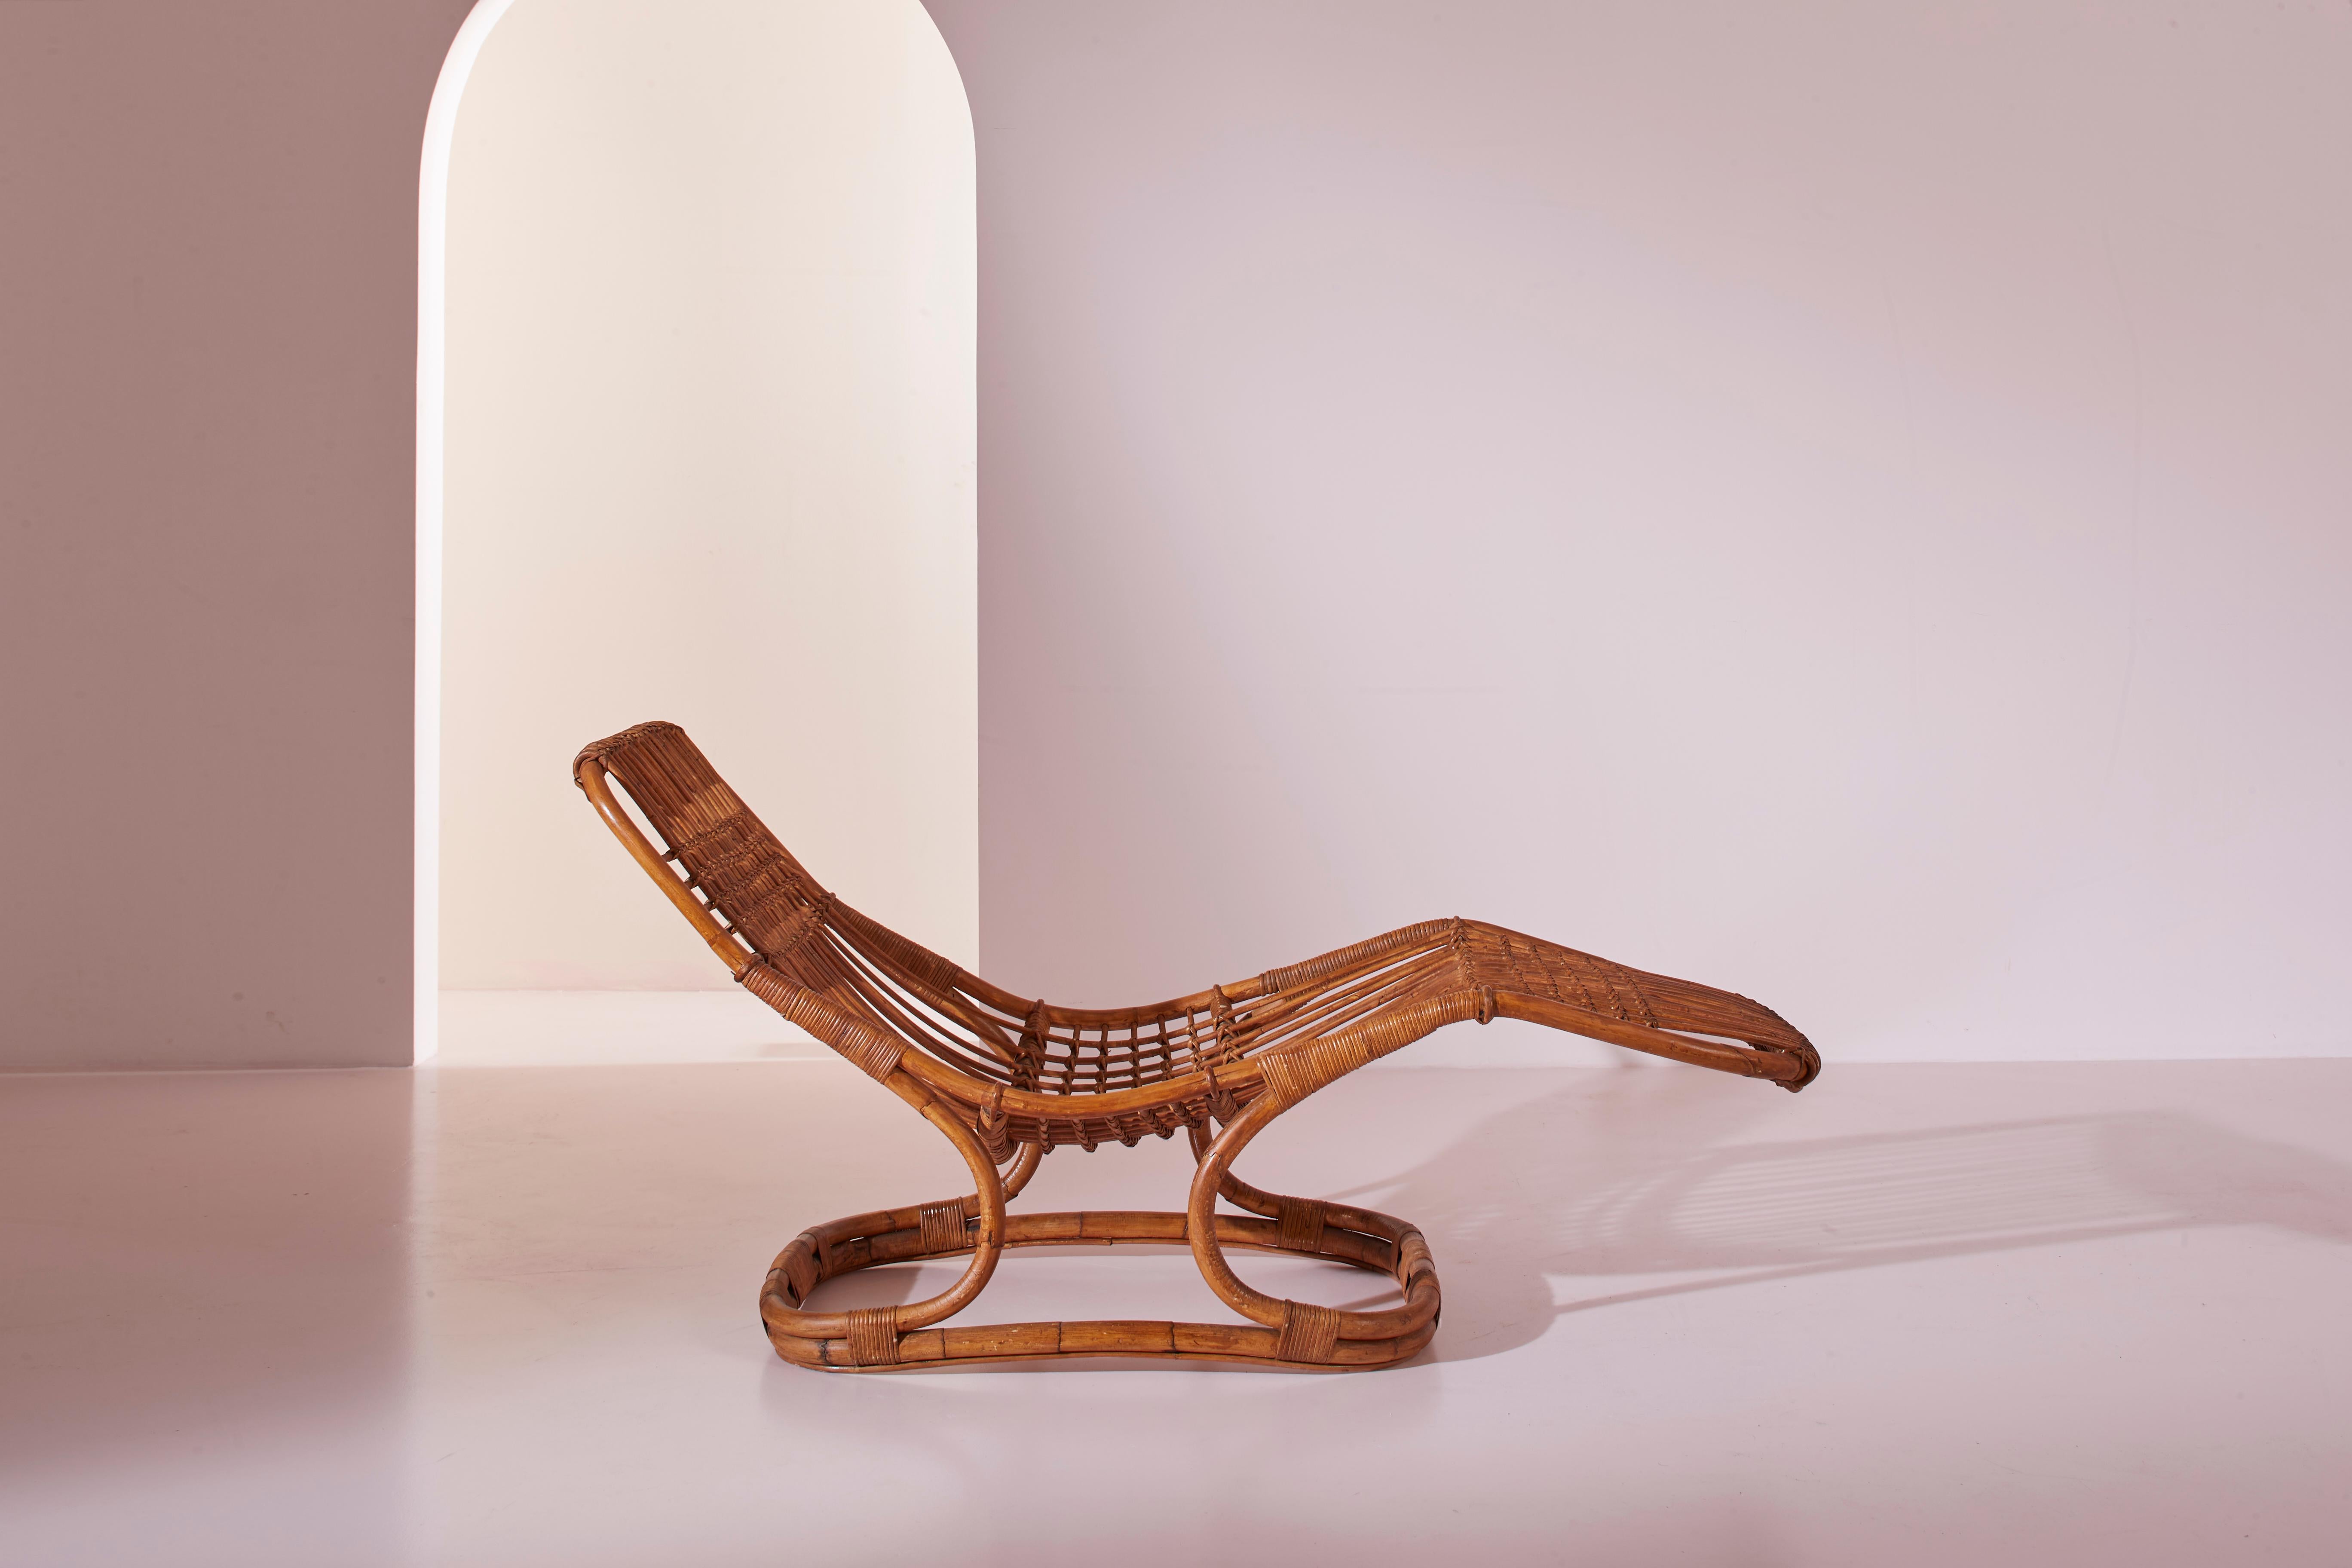 Chaise longue en osier et rotin, conçue par Tito Agnoli, produite par Pierantonio Bonacina dans les années 1960.

La particularité de ce siège relaxant réside dans la remarquable plasticité du matériau naturel utilisé, qui s'adapte parfaitement à